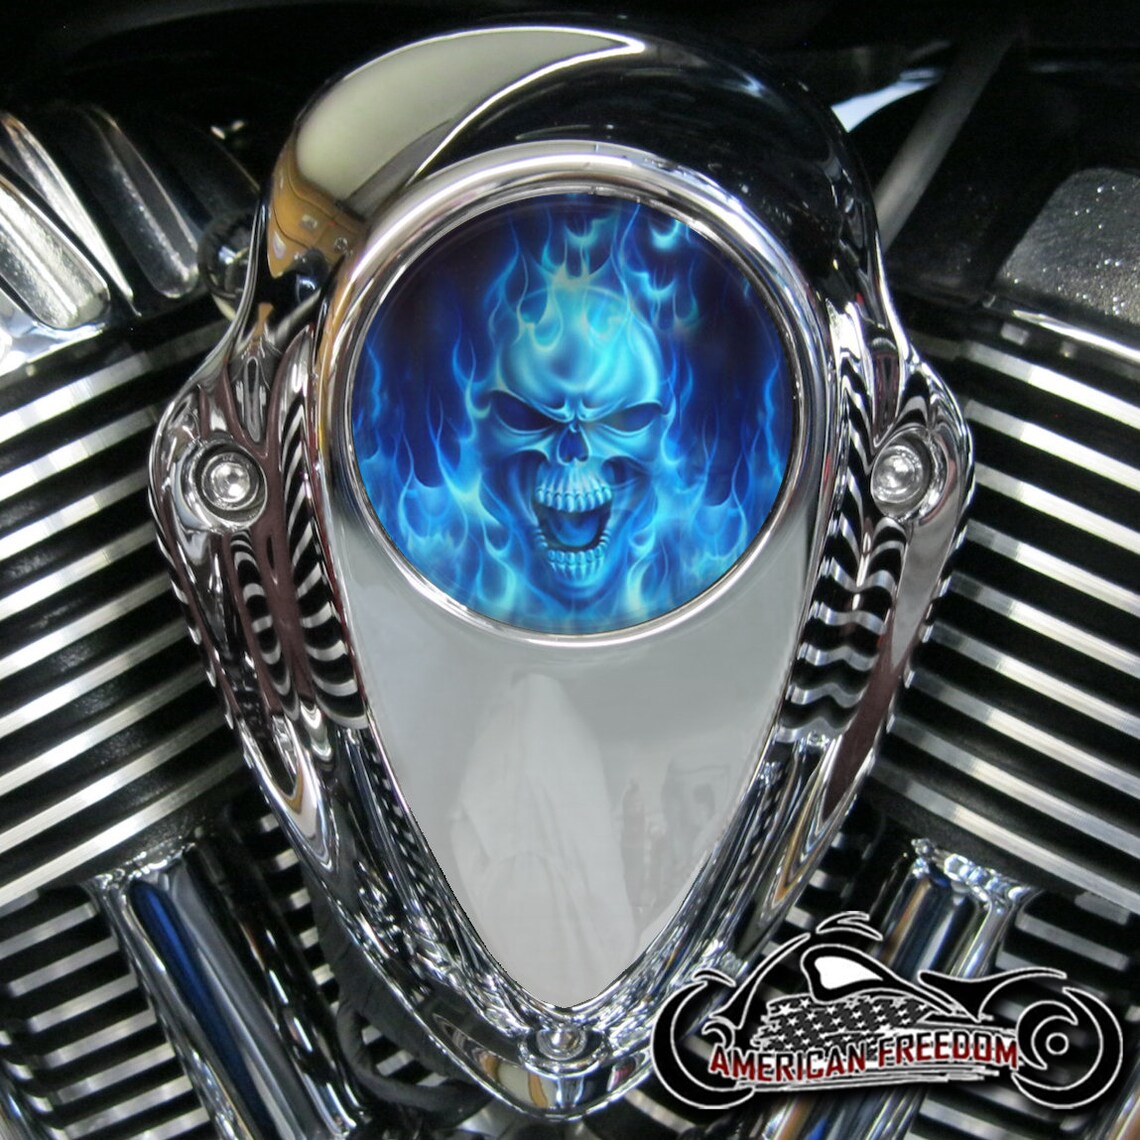 Indian Thunder Stroke Horn Insert - Blue Flame Skull